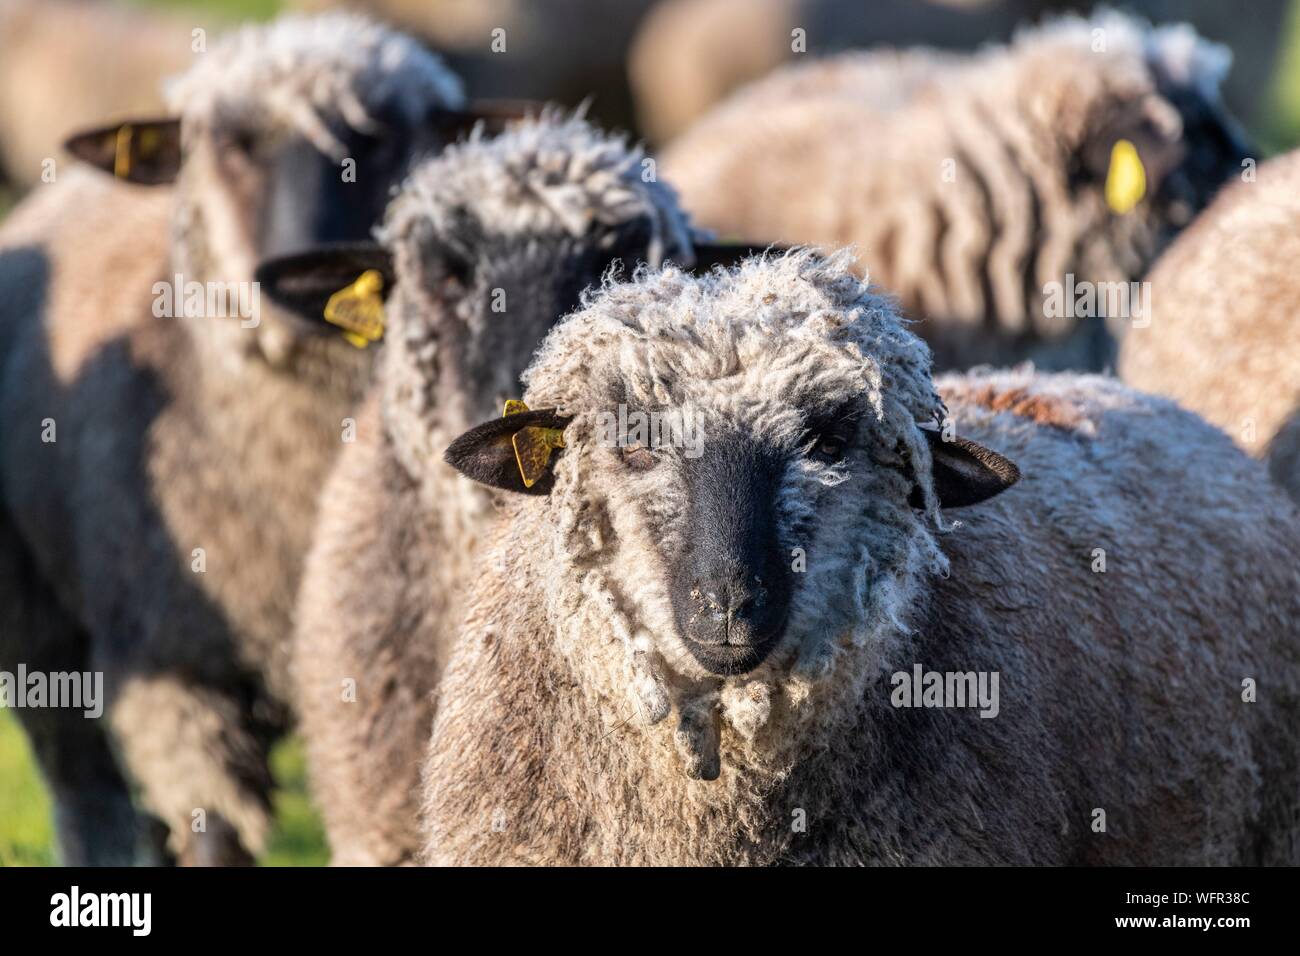 Francia, Somme, Baie de Somme Le Crotoy, sale prato pecore in Baie de Somme in primavera, in questo periodo dell'anno, pecore hanno ancora i loro la lana e gli agnelli sono ancora piccole, un paio di capre accompagna il gregge che lo guidi nei prati Foto Stock